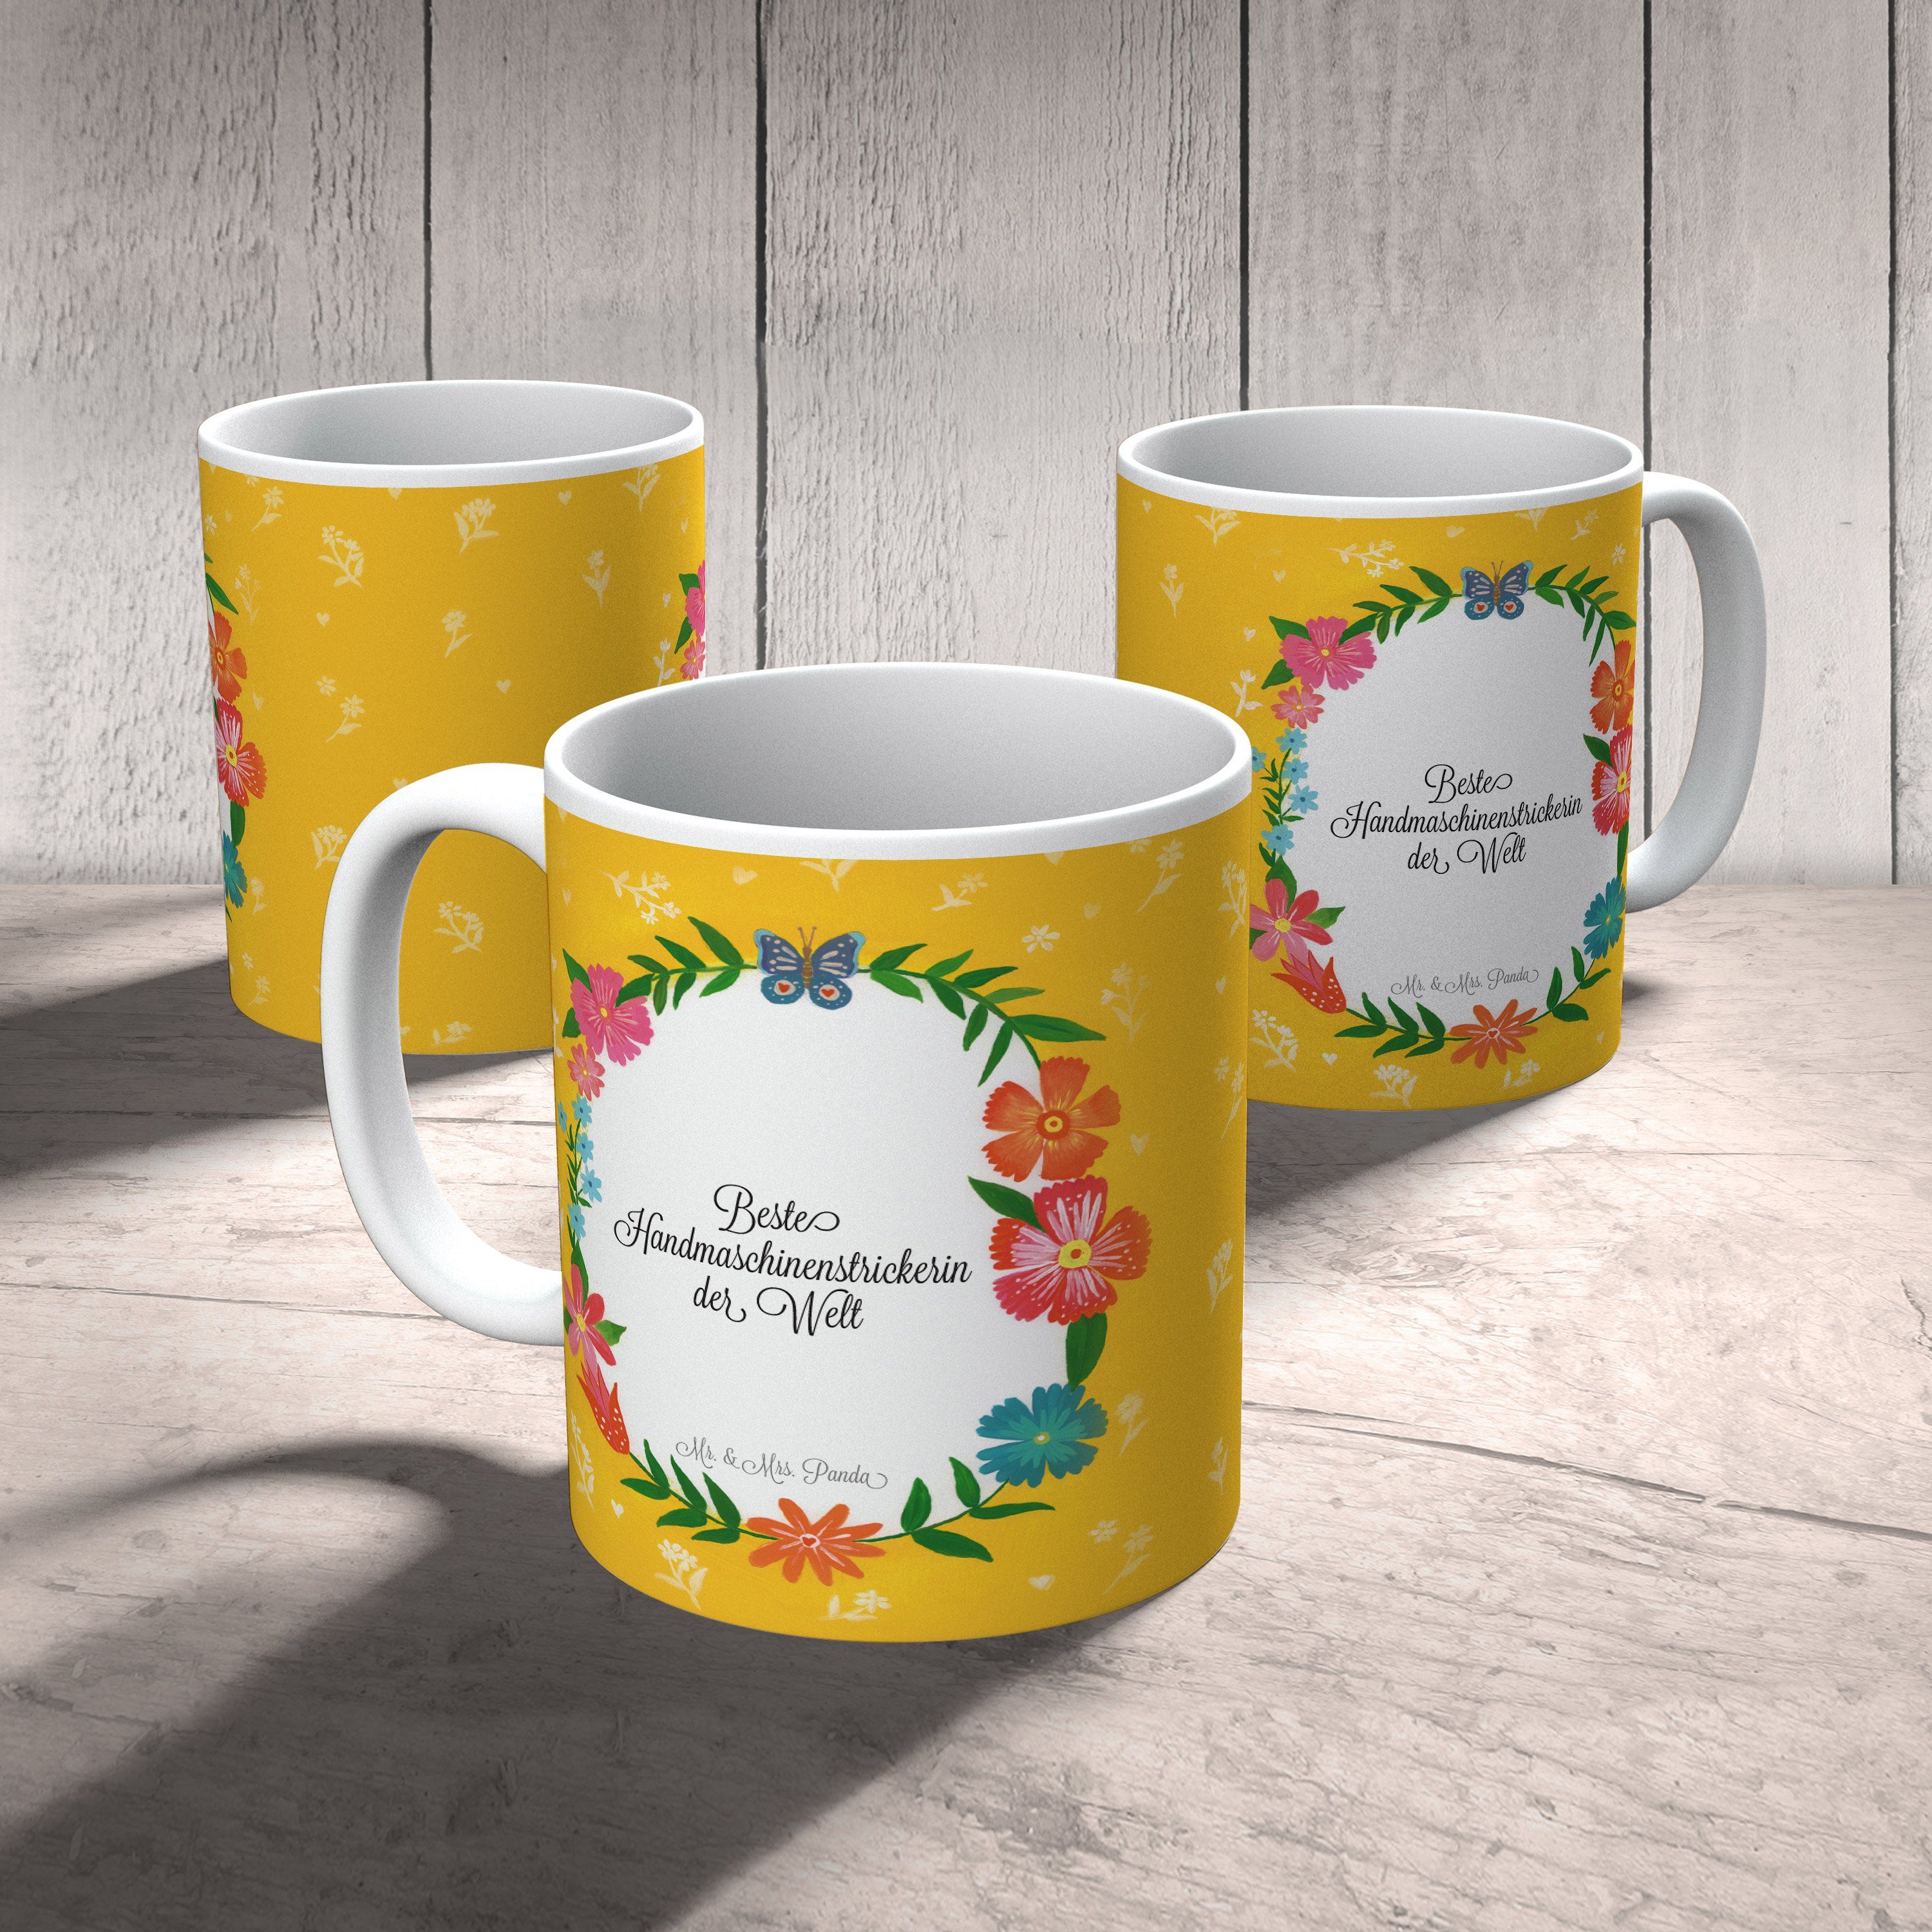 Mr. & Mrs. Keramik Abschied, - Geschenk, Panda Tasse, Teetass, Geschenk Tasse Handmaschinenstrickerin